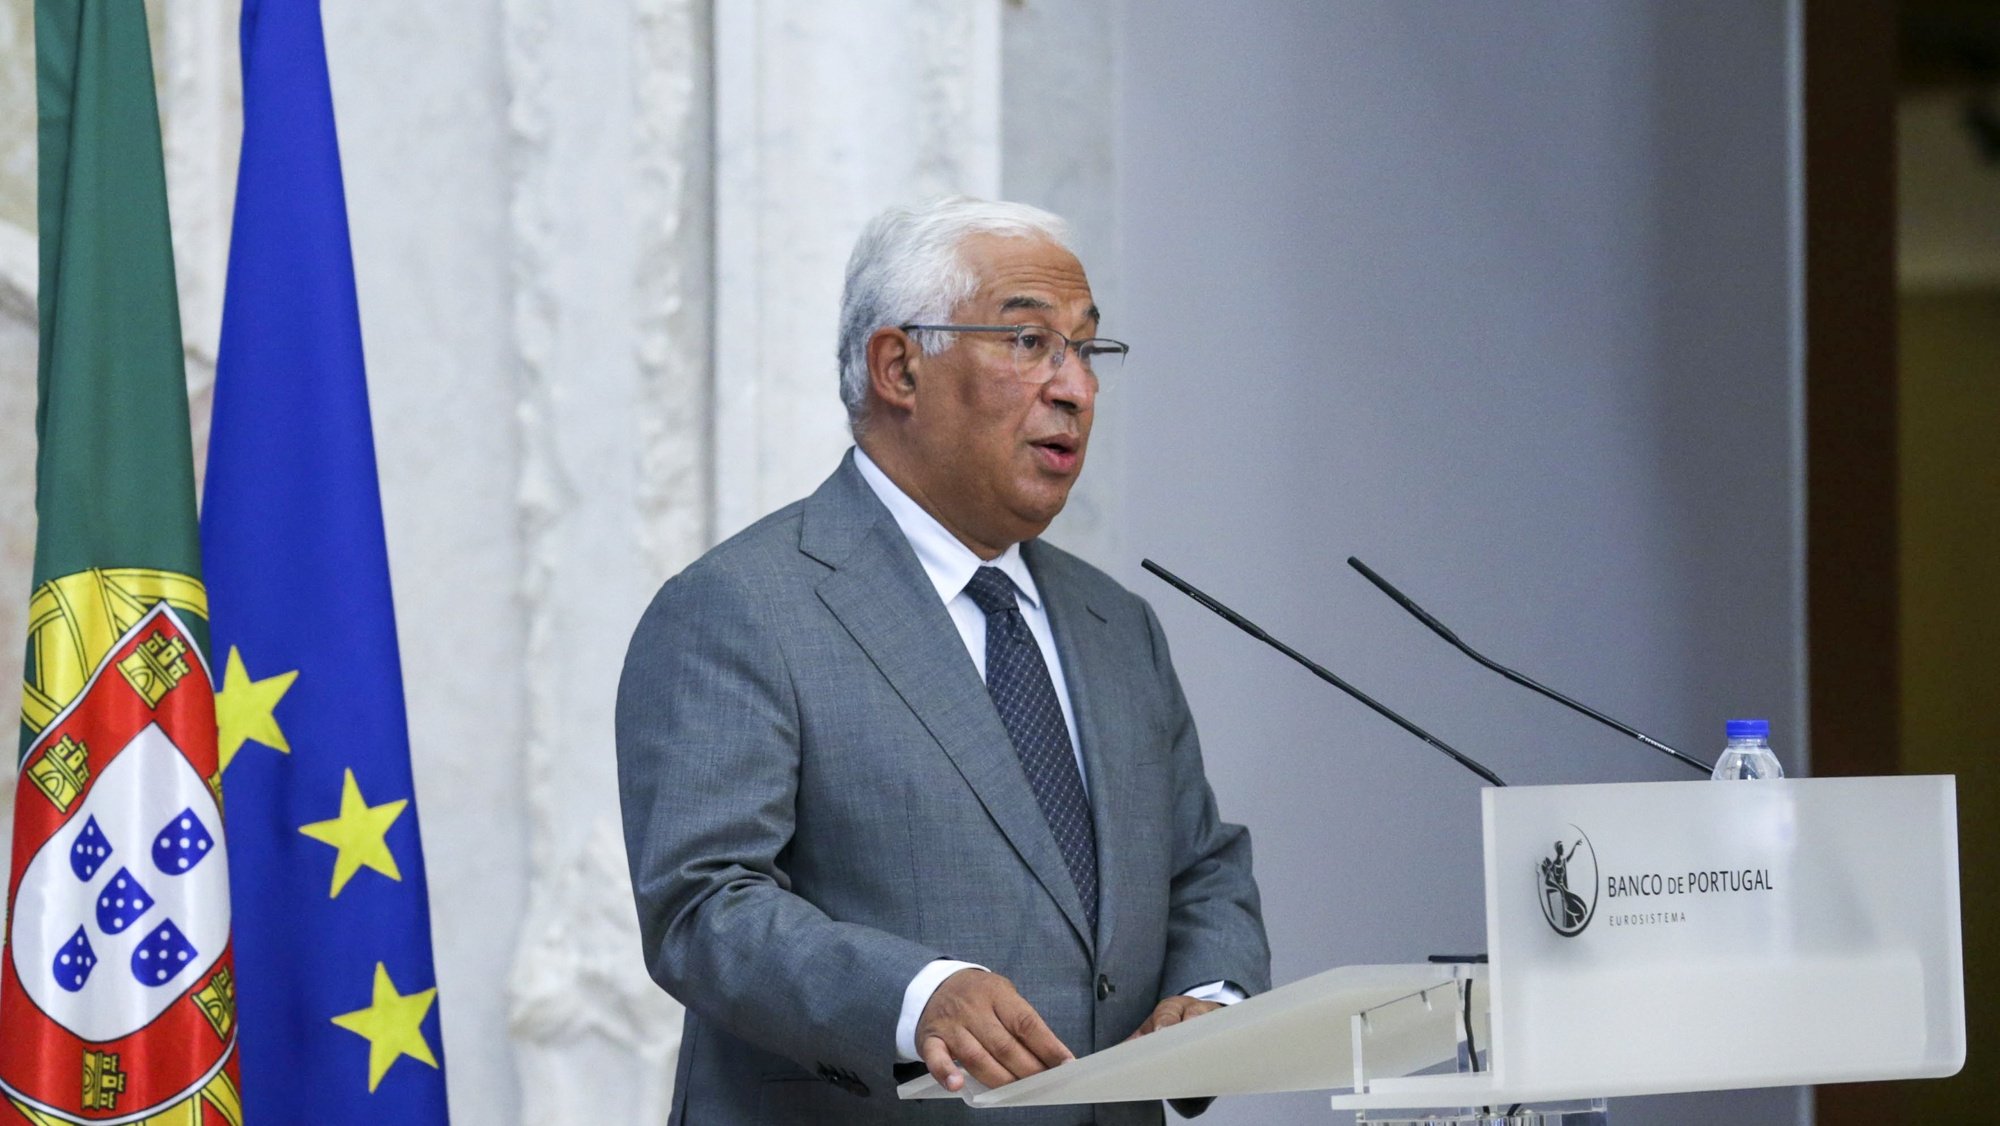 O primeiro-ministro, António Costa, durante a sessão solene comemorativa do 175.º aniversário do Banco de Portugal na sede da instituíção em Lisboa, 03 de novembro de 2021. TIAGO PETINGA/LUSA